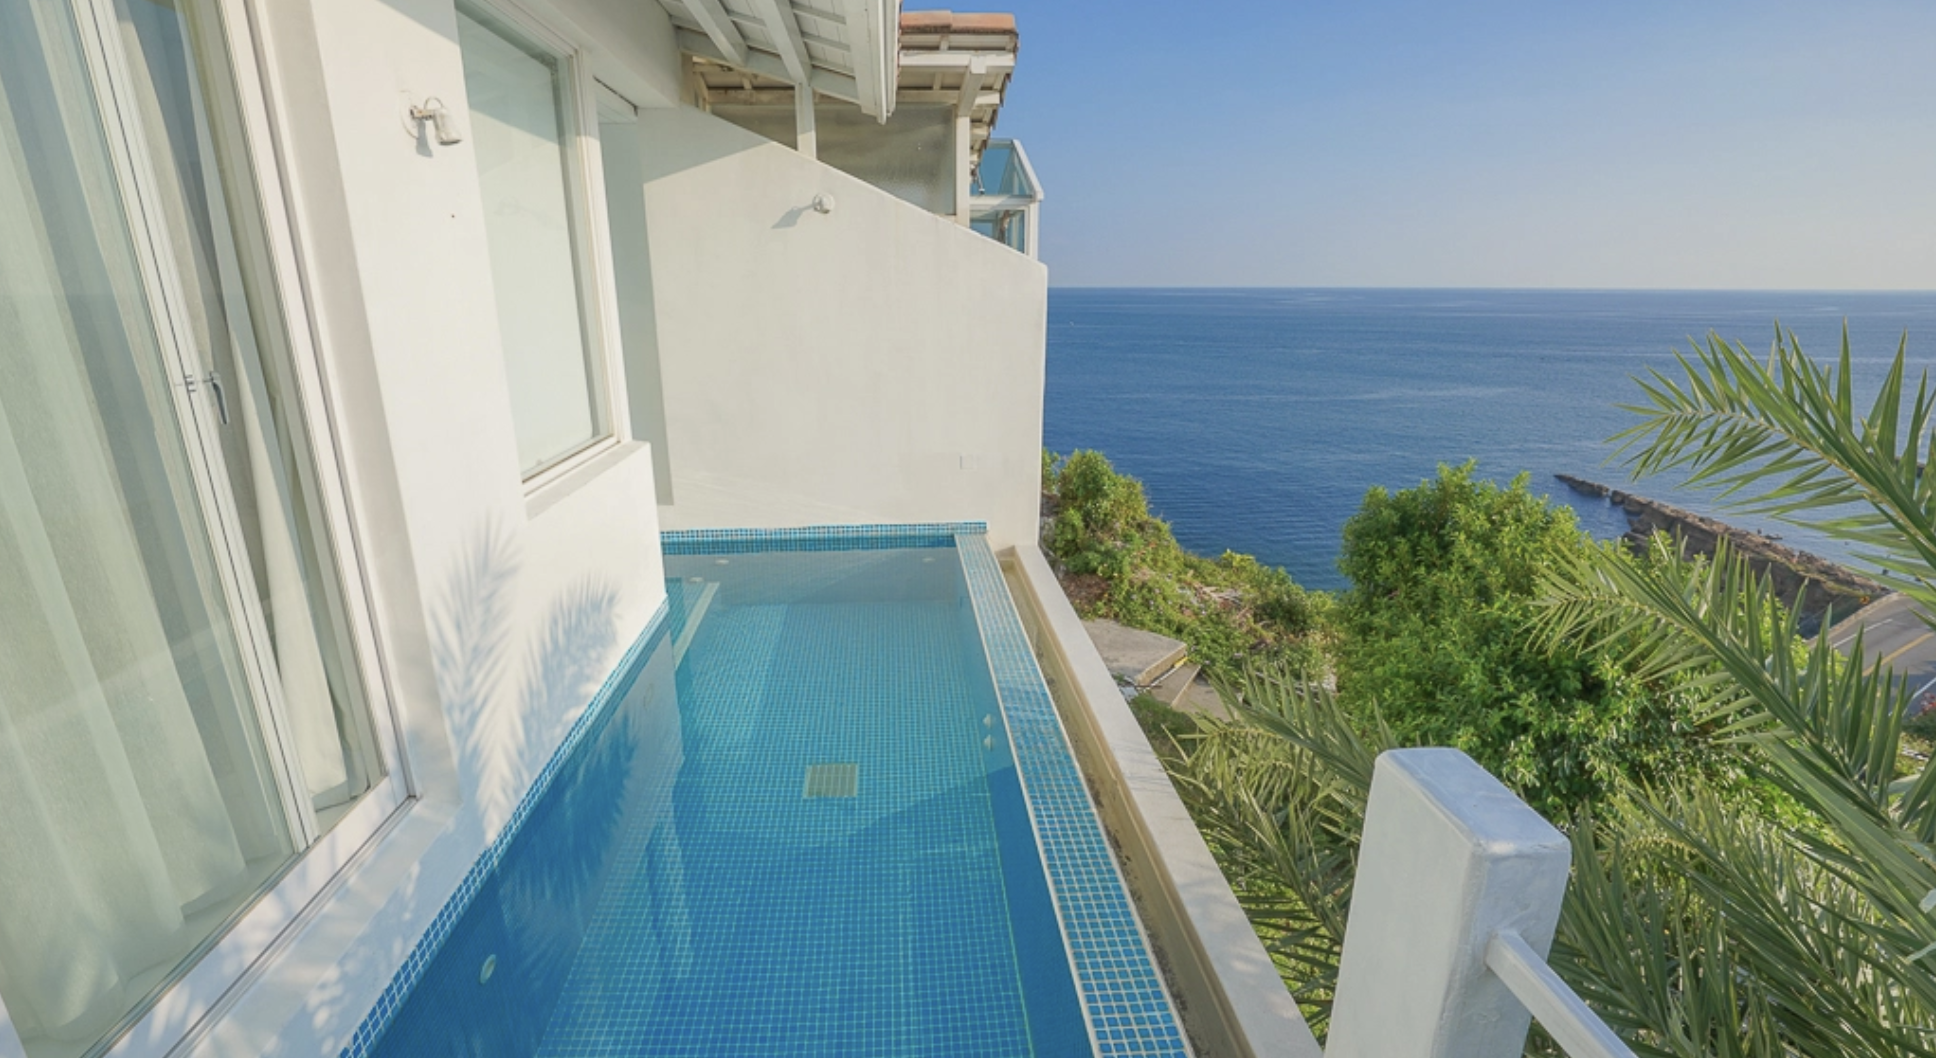 北海岸海景住宿「Greek Villa 小希臘民宿」每間房都有海景泳池、下午茶和早餐 @小腹婆大世界